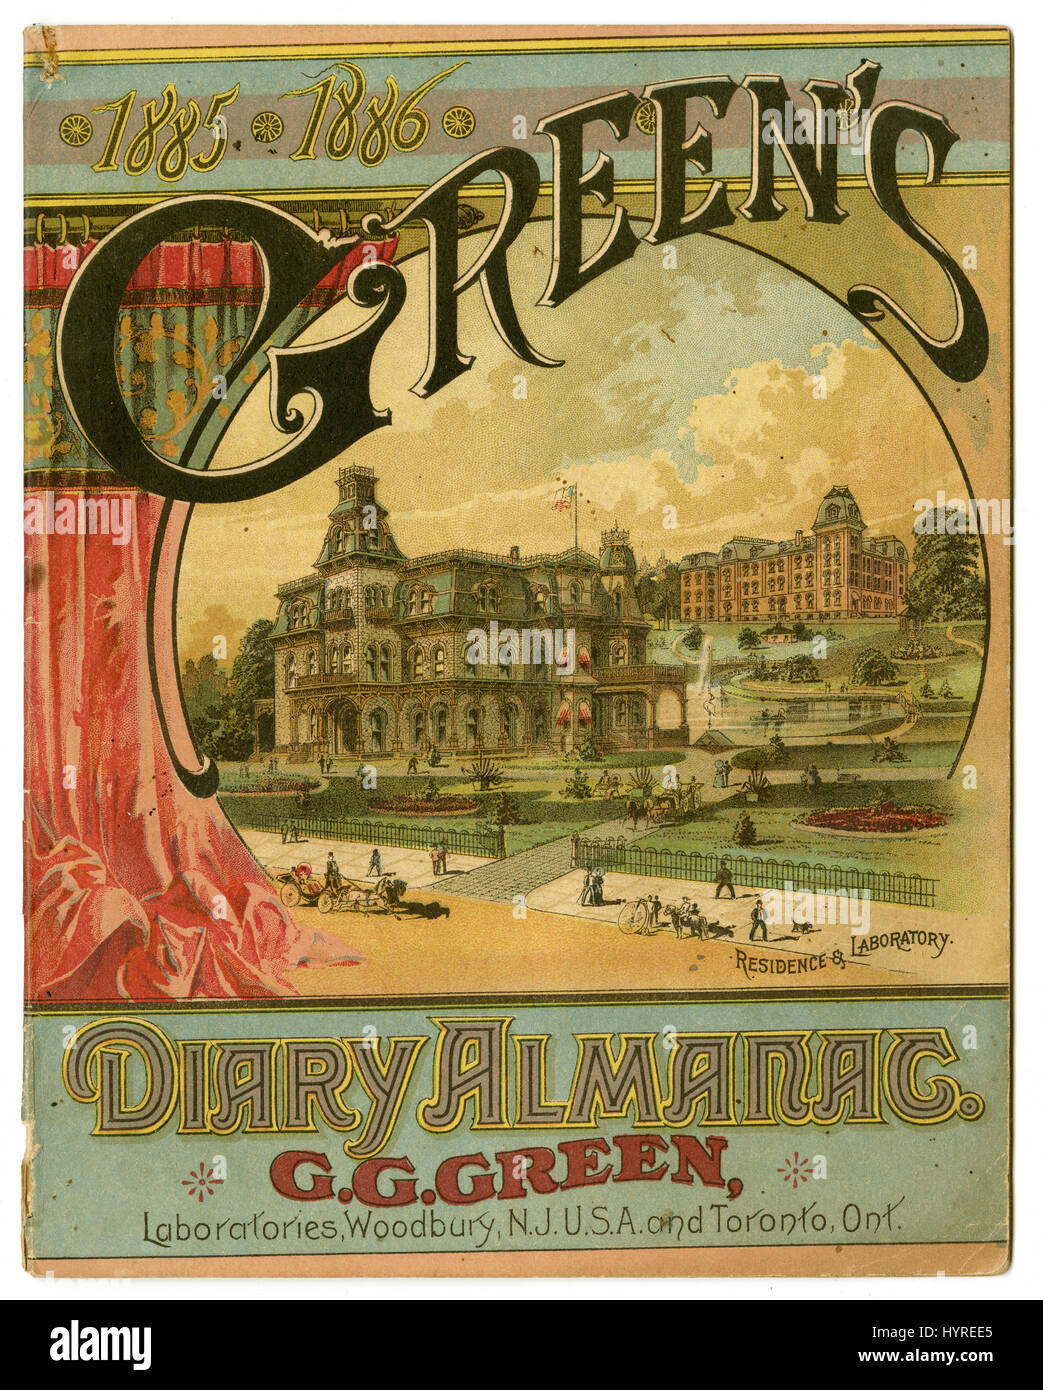 Couverture de l'Almanach du journal vert 1885-1886 par G.G. Vert, montrant la résidence & Laboratoire de Woodbury, New Jersey, USA. Banque D'Images